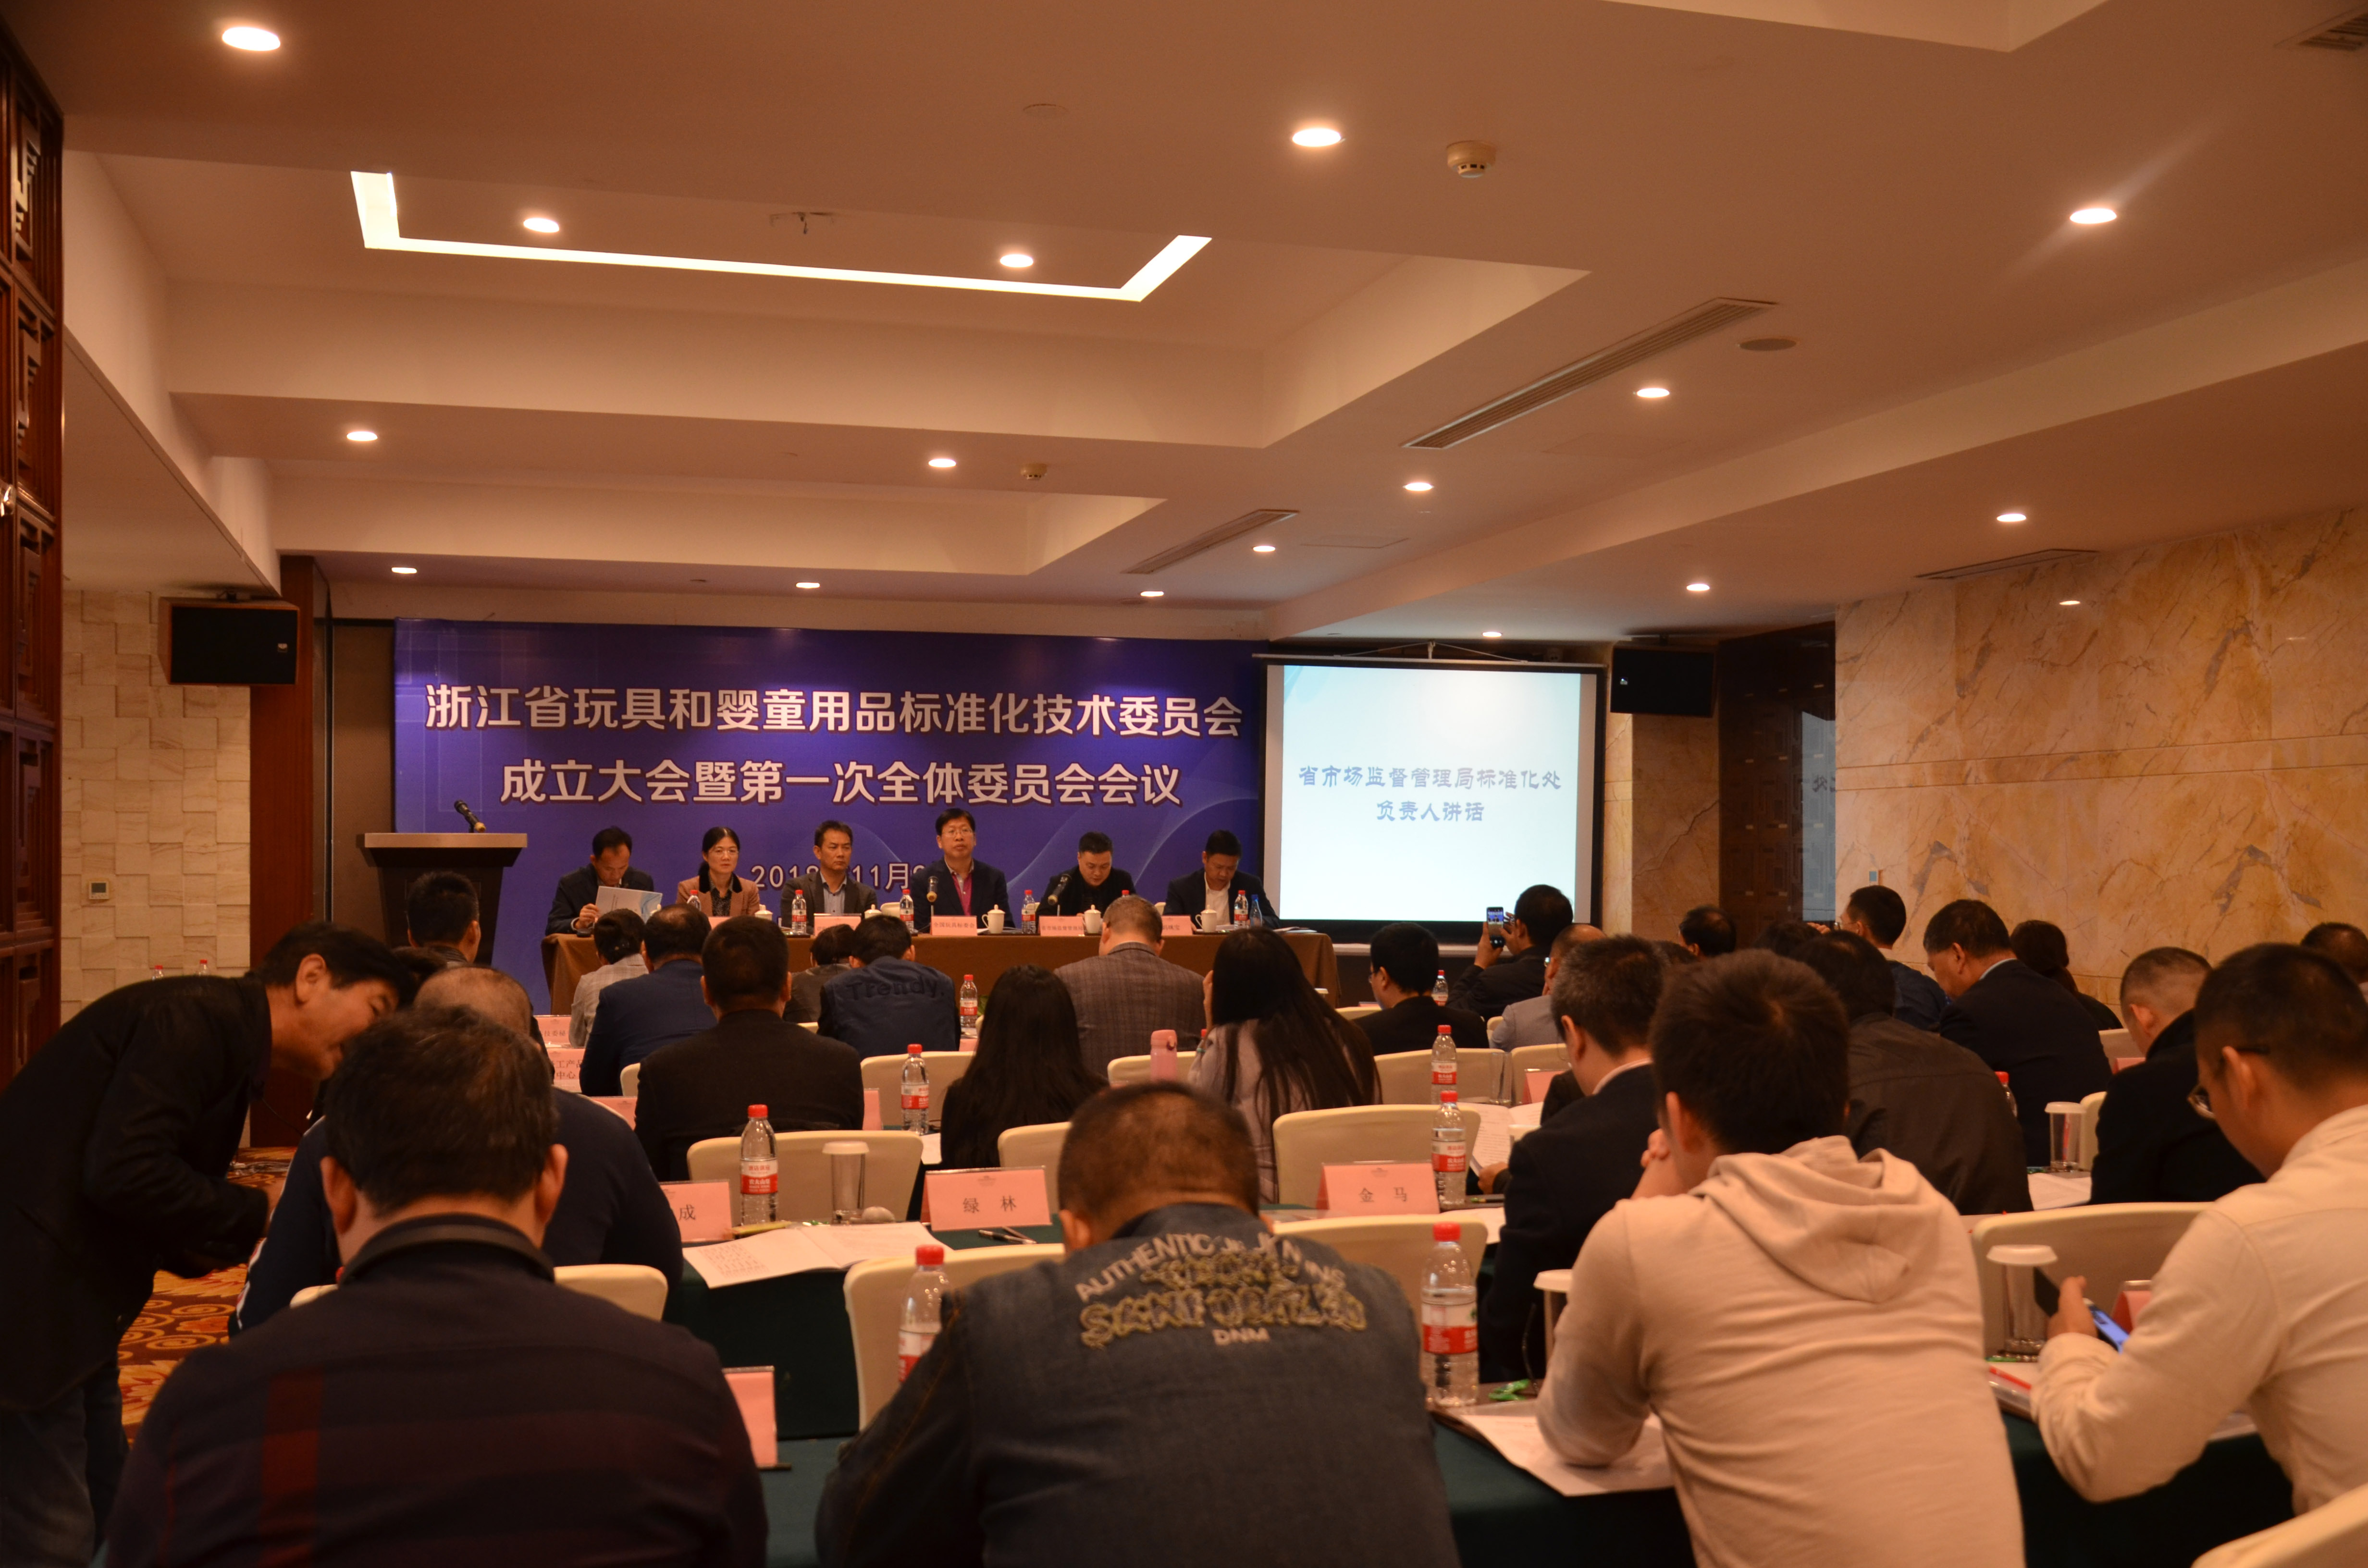 浙江省玩具和婴童用品标准化技术委员会成立大会在宁波顺利举行